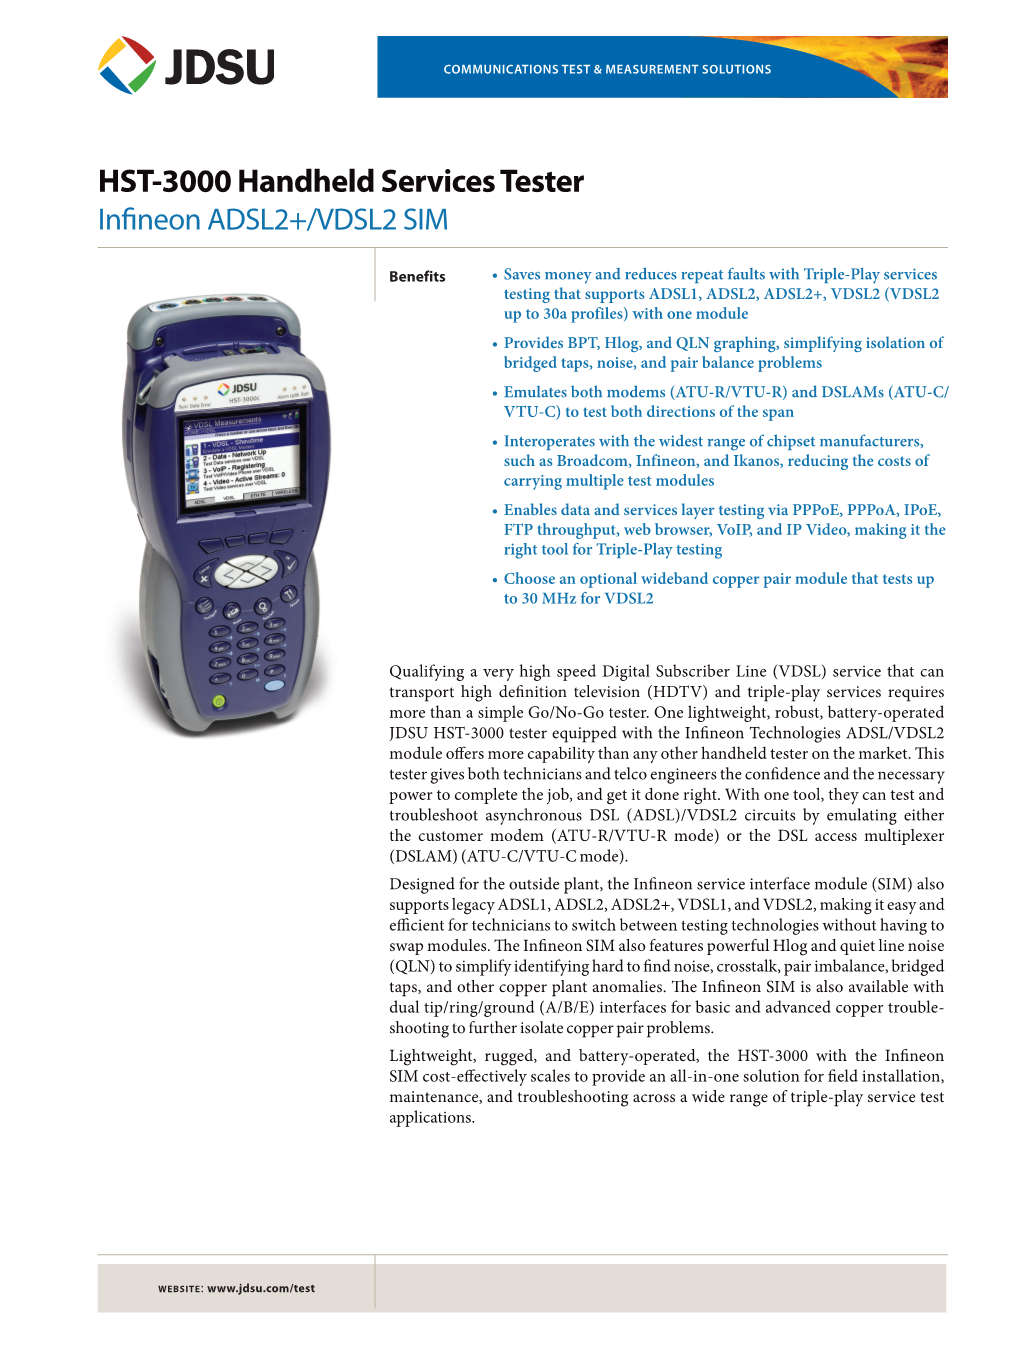 HST-3000 Handheld Services Tester Infineon ADSL2+/VDSL2 SIM